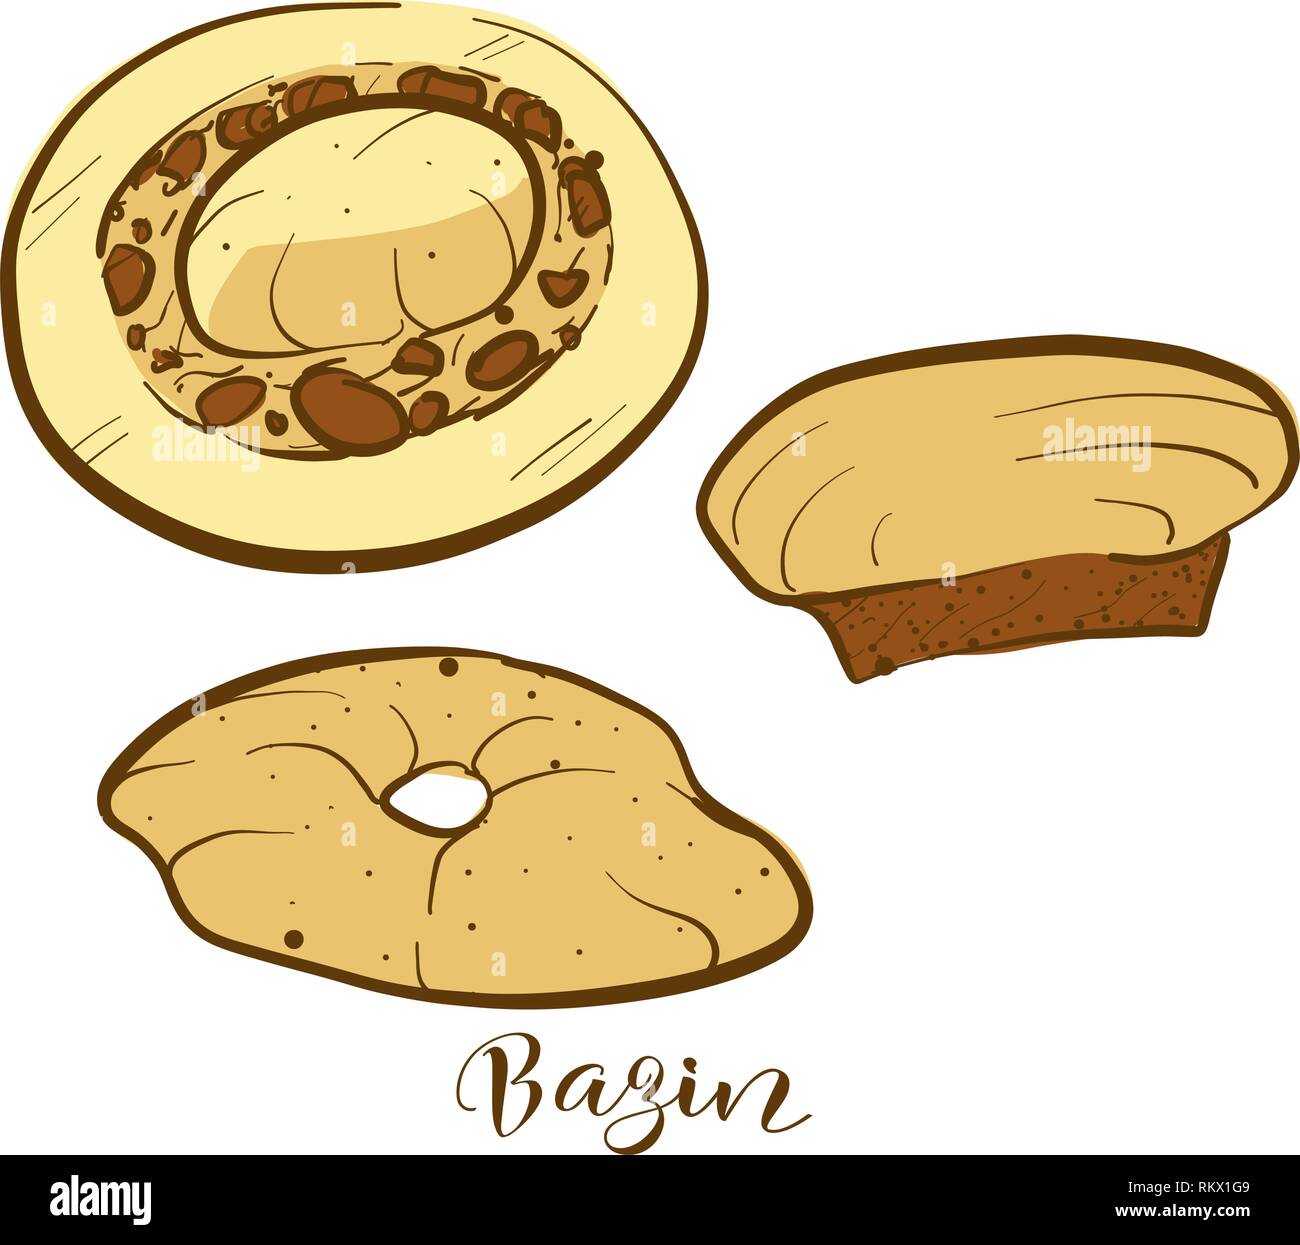 Farbige Skizzen von Bazin Brot. Vektor Zeichnung von Fladenbrot Essen, in der Regel in Libyen bekannt. Farbige Brot Abbildung Serie. Stock Vektor